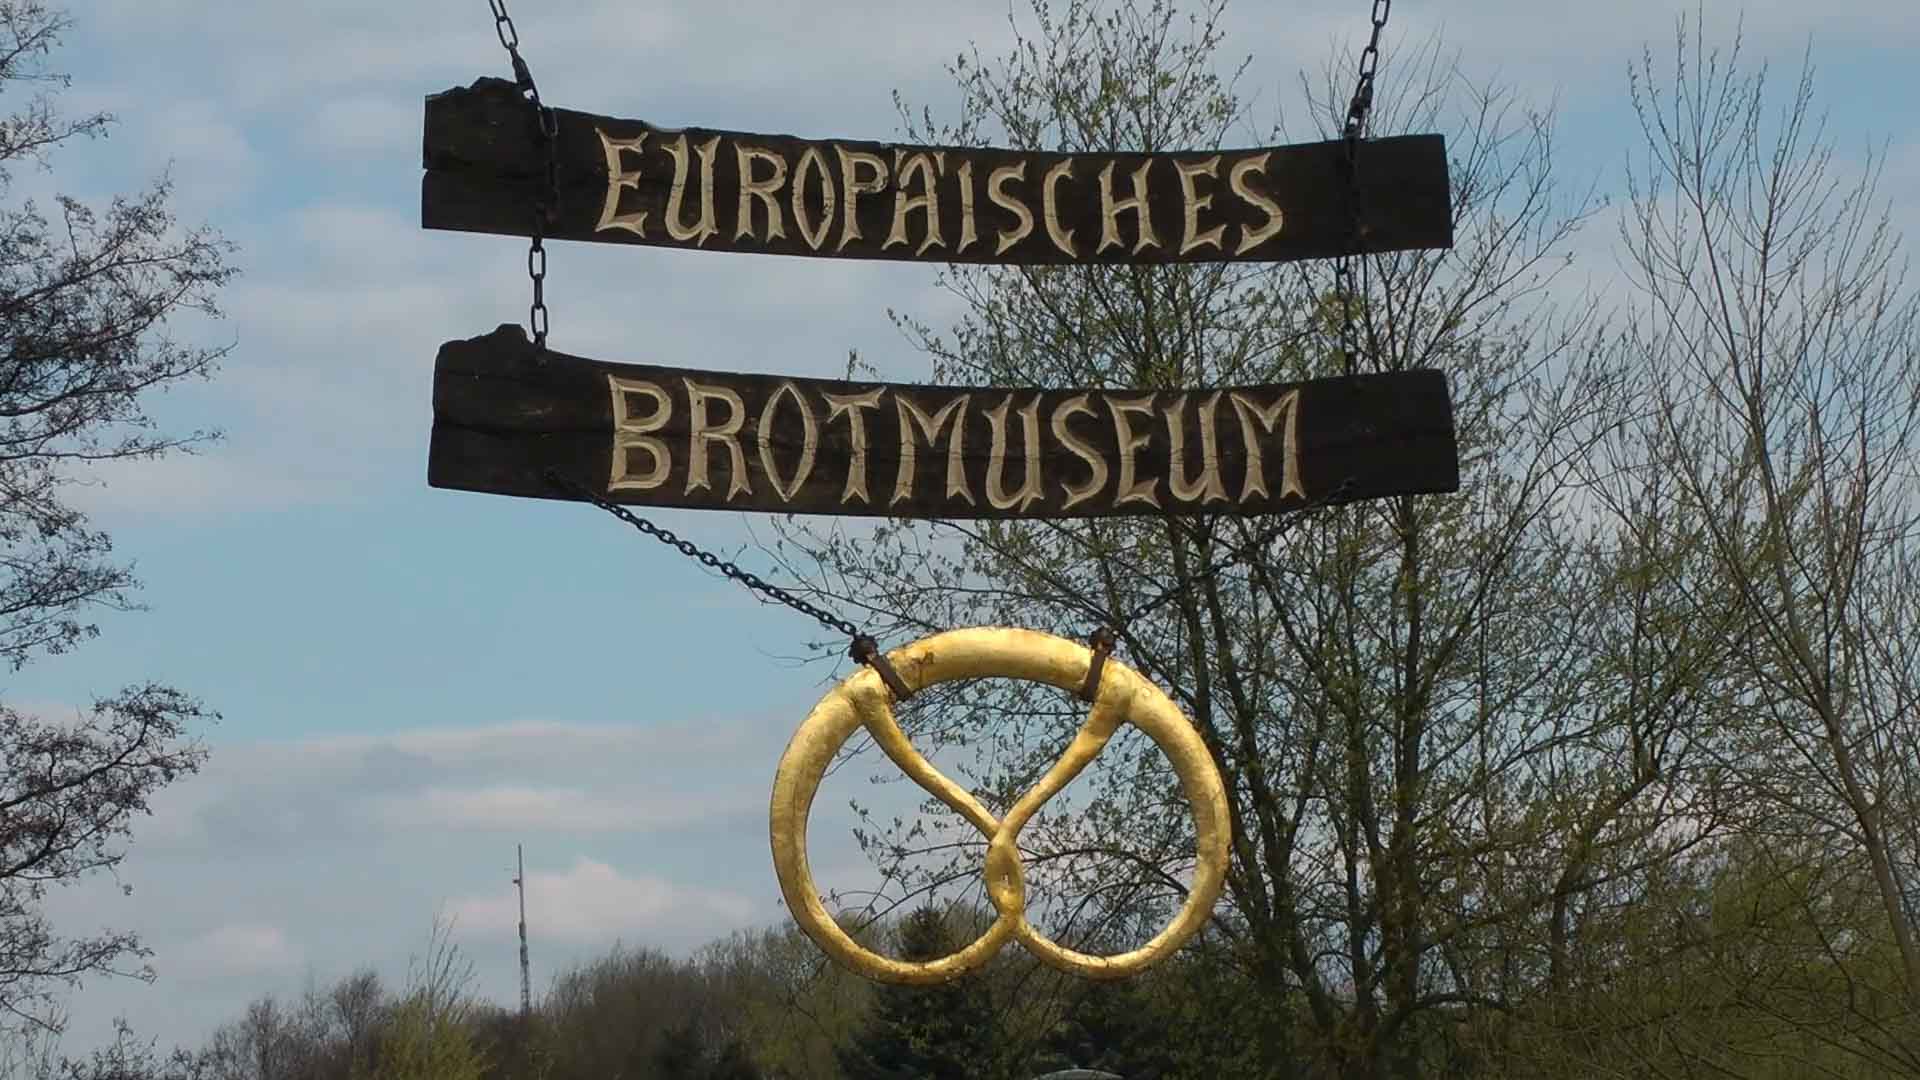 Europäisches Brotmuseum in Ebergötzen